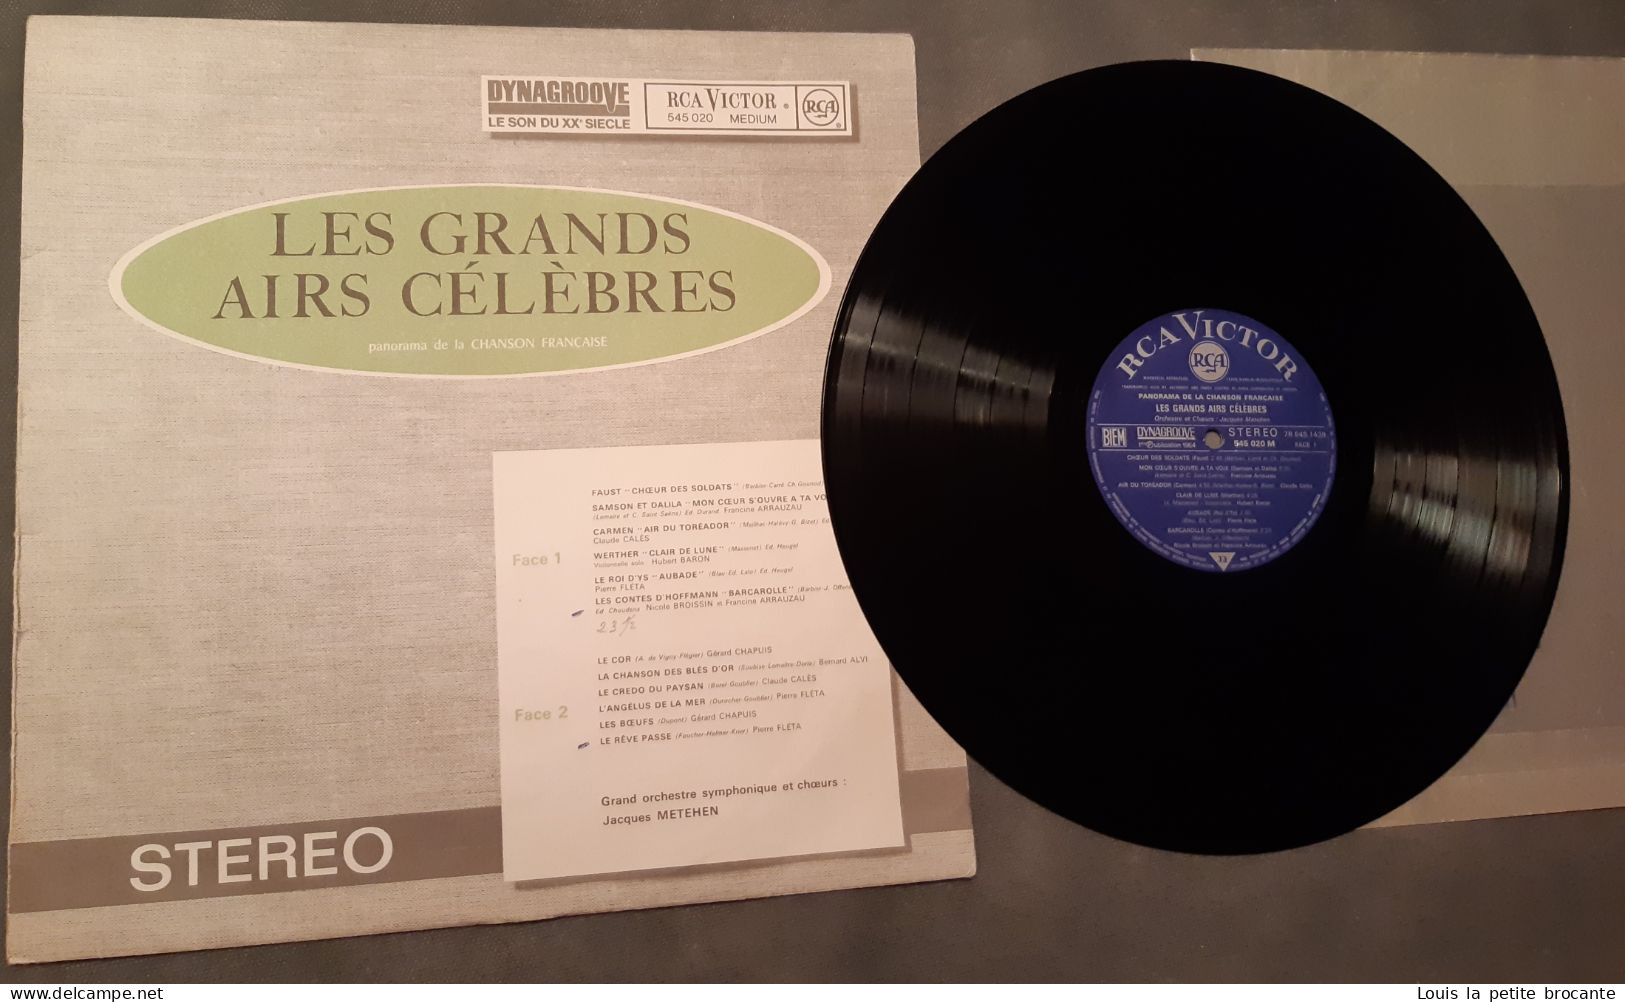 Coffret de 10 disques vinyles, PANORAMA DE LA CHANSON FRANCAISE - DINAGROOVE - RCA VICTOR 1964, 1 chanson rayée